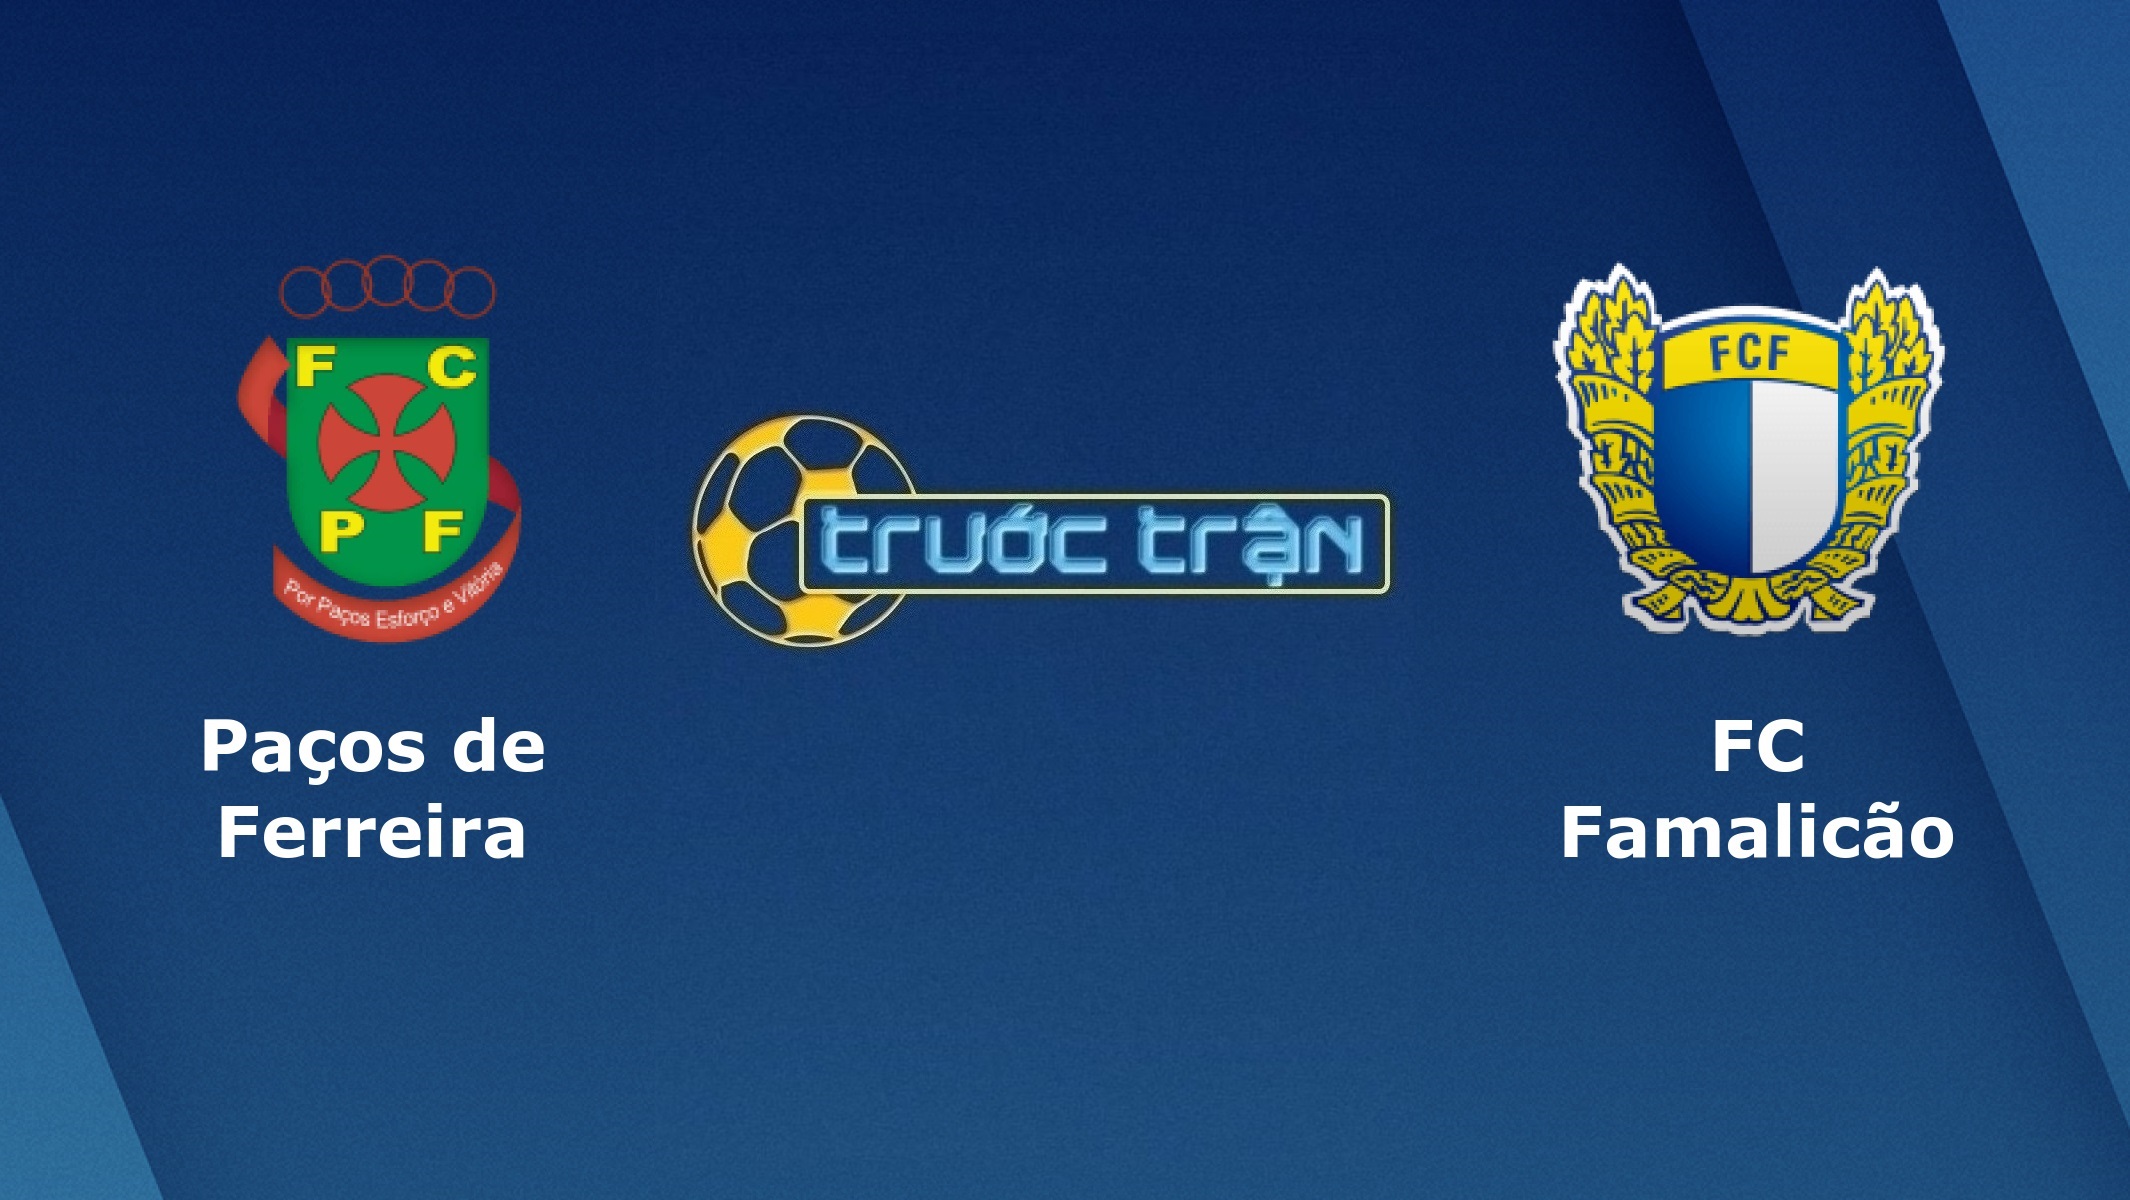 Pacos de Ferreira vs Famalicao – Tip kèo bóng đá hôm nay – 02h00 28/11/2020